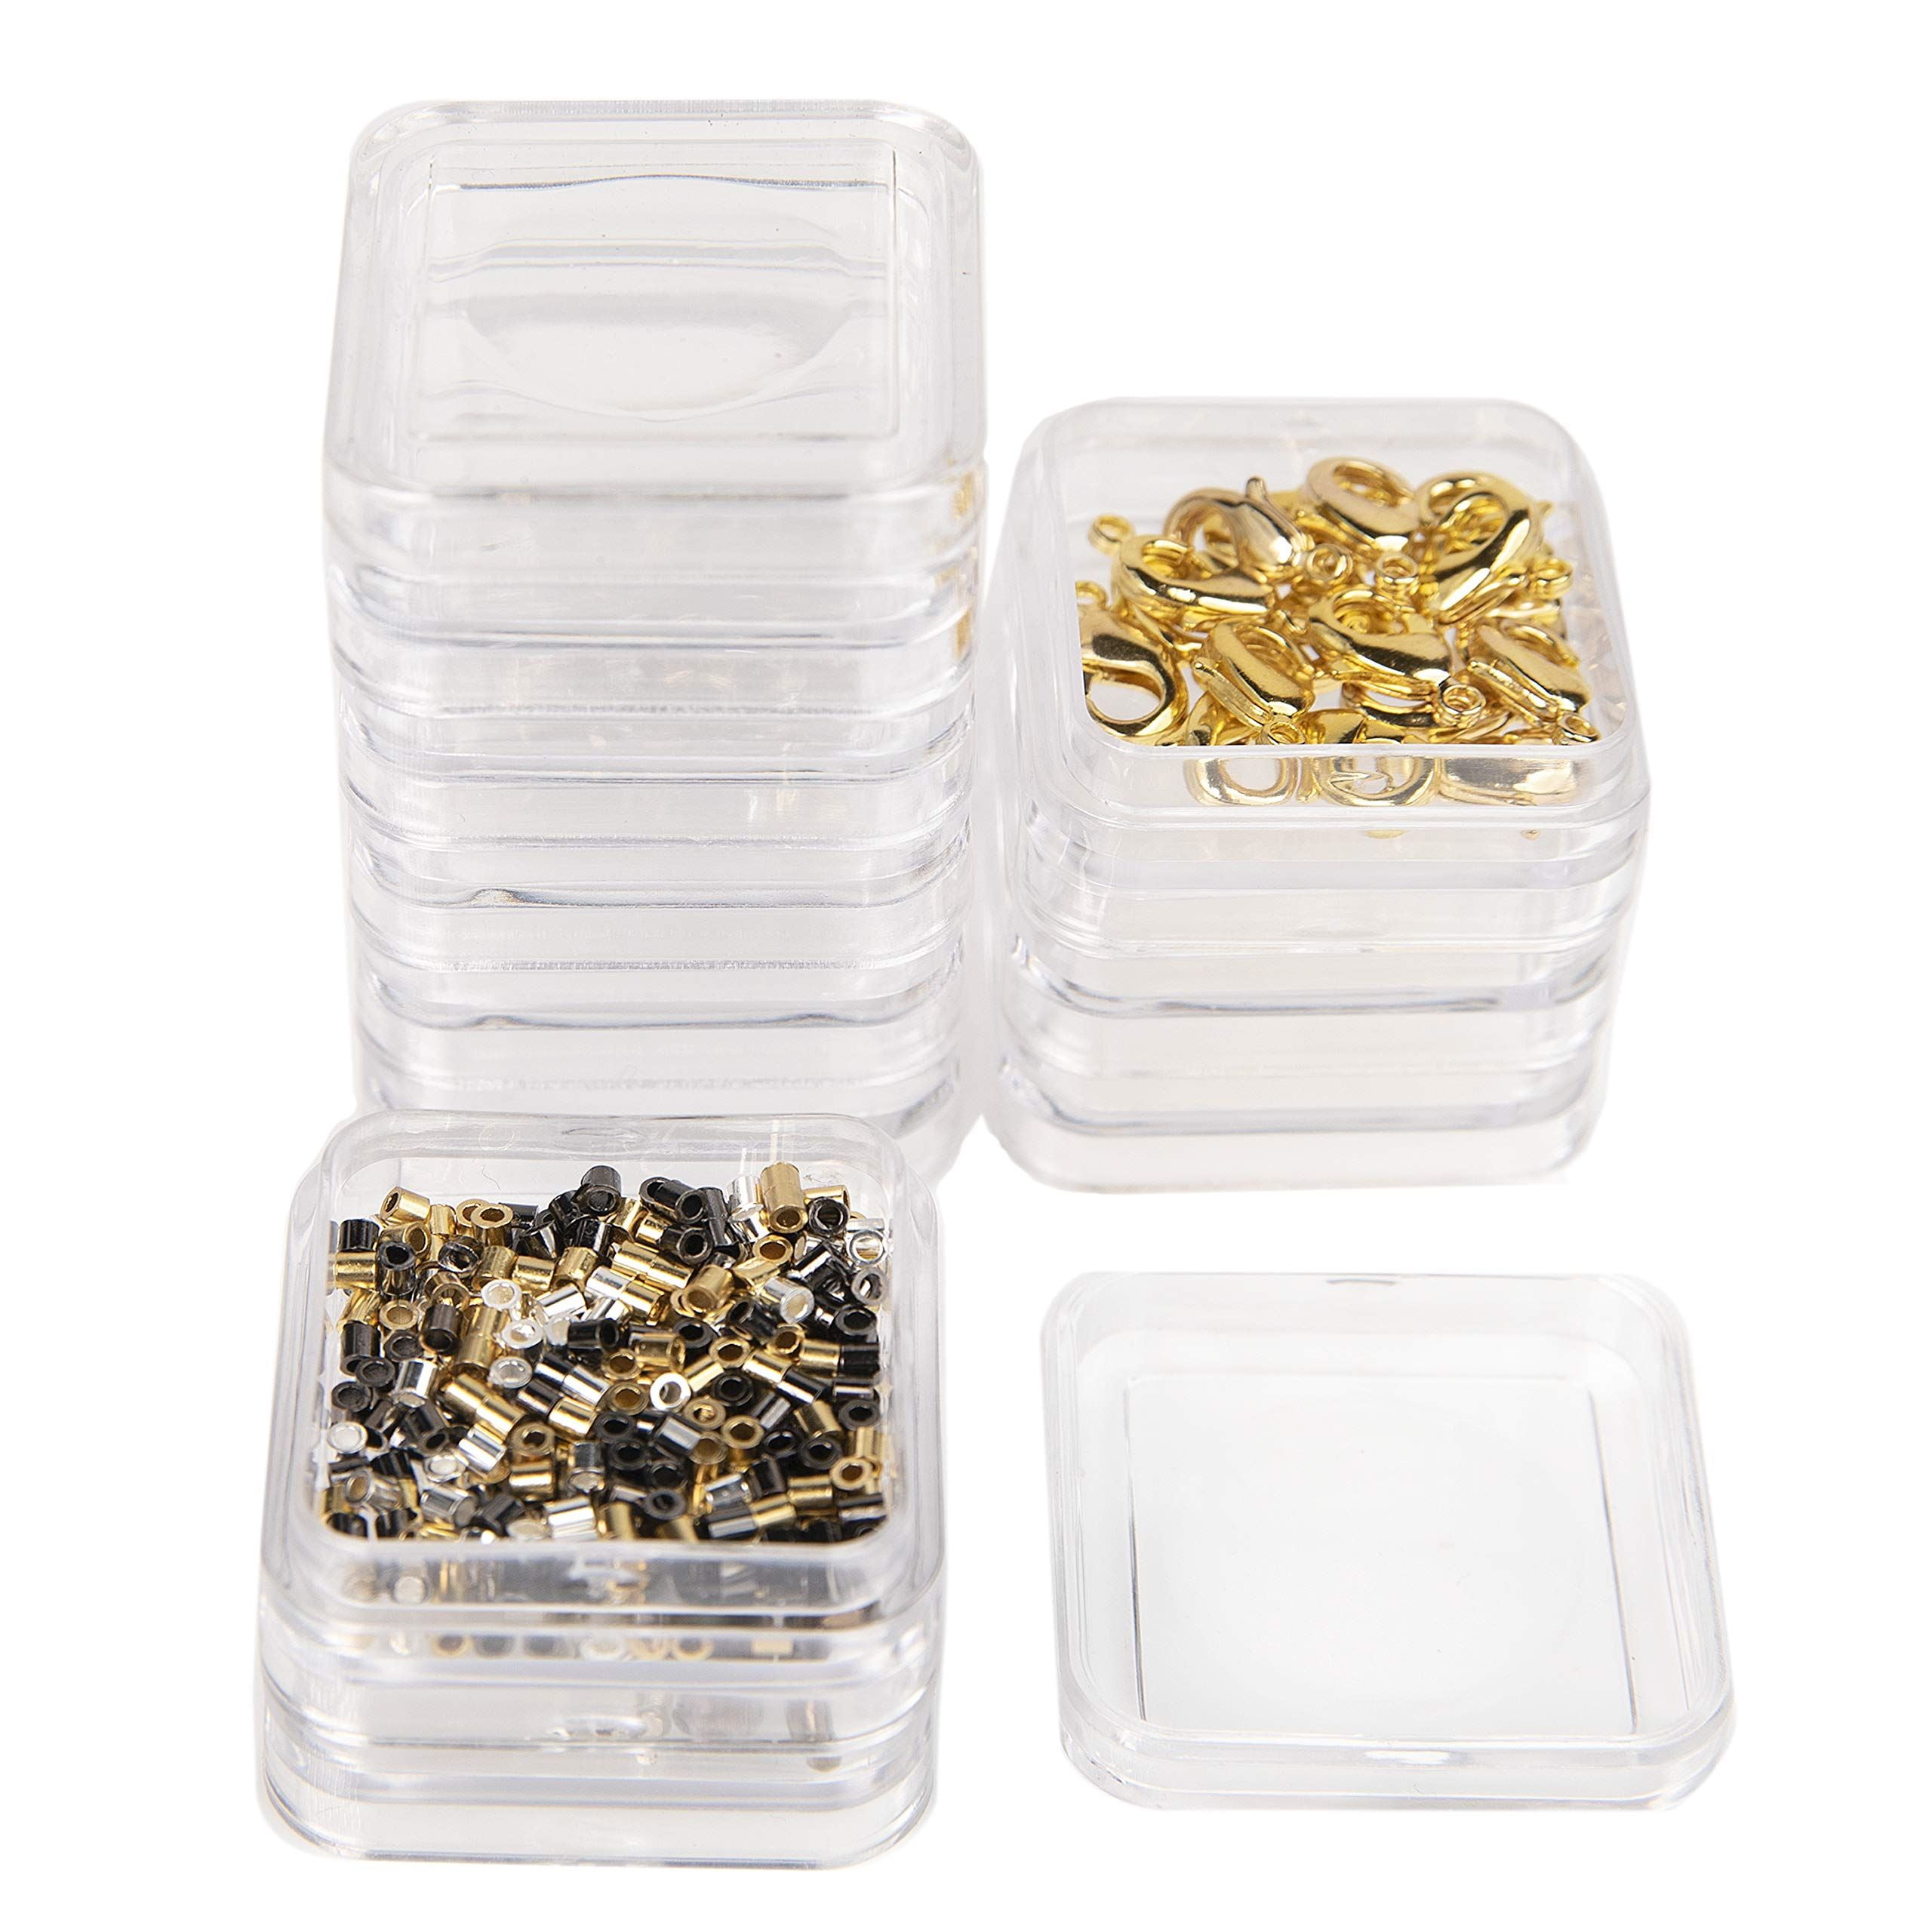 The Beadsmith® 6'' x 5'' x 2'' Clear Storage Box with Jars